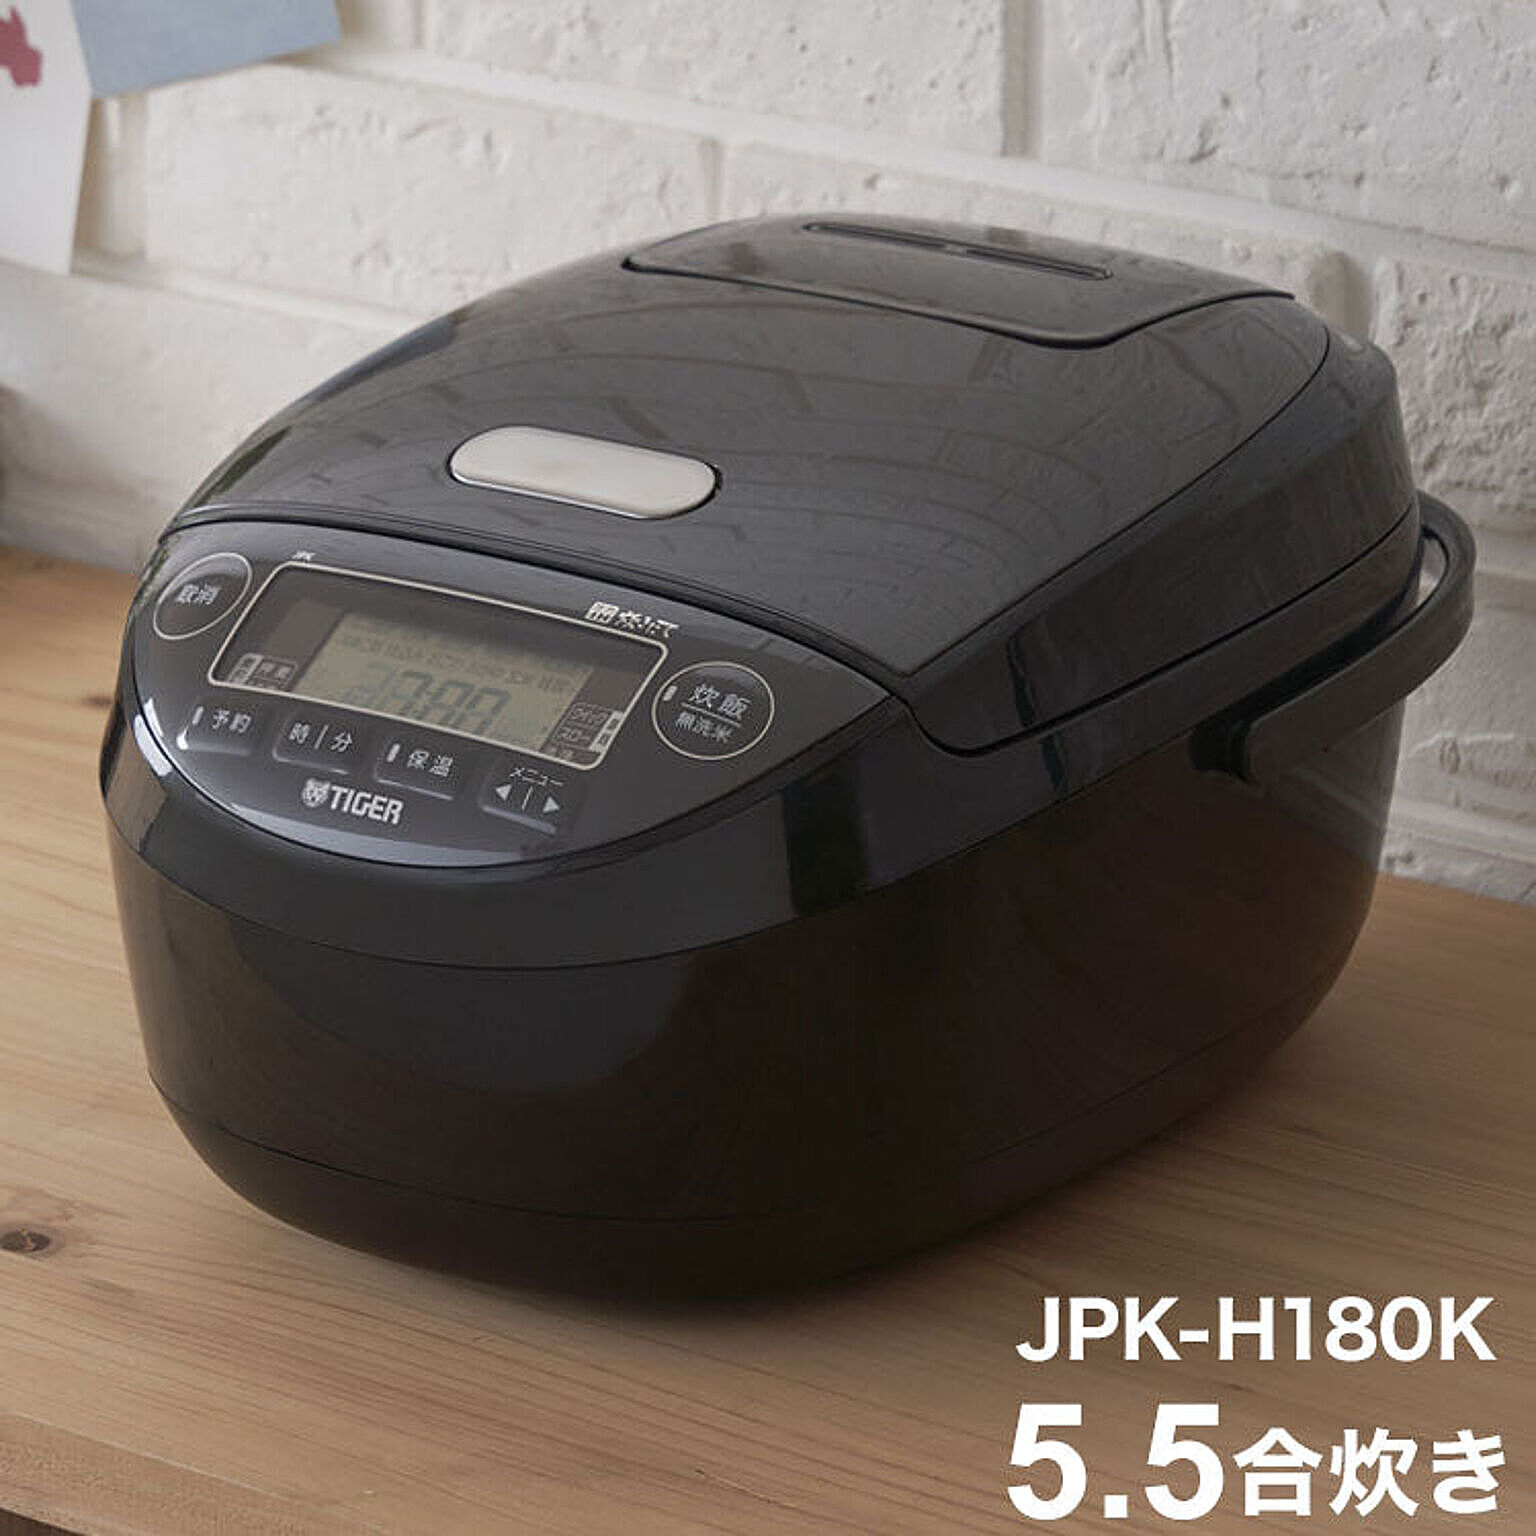 タイガー魔法瓶 圧力IHジャー炊飯器 5.5合炊き ブラック JPK-H180K 炊飯器 炊飯ジャー タイガー TIGER